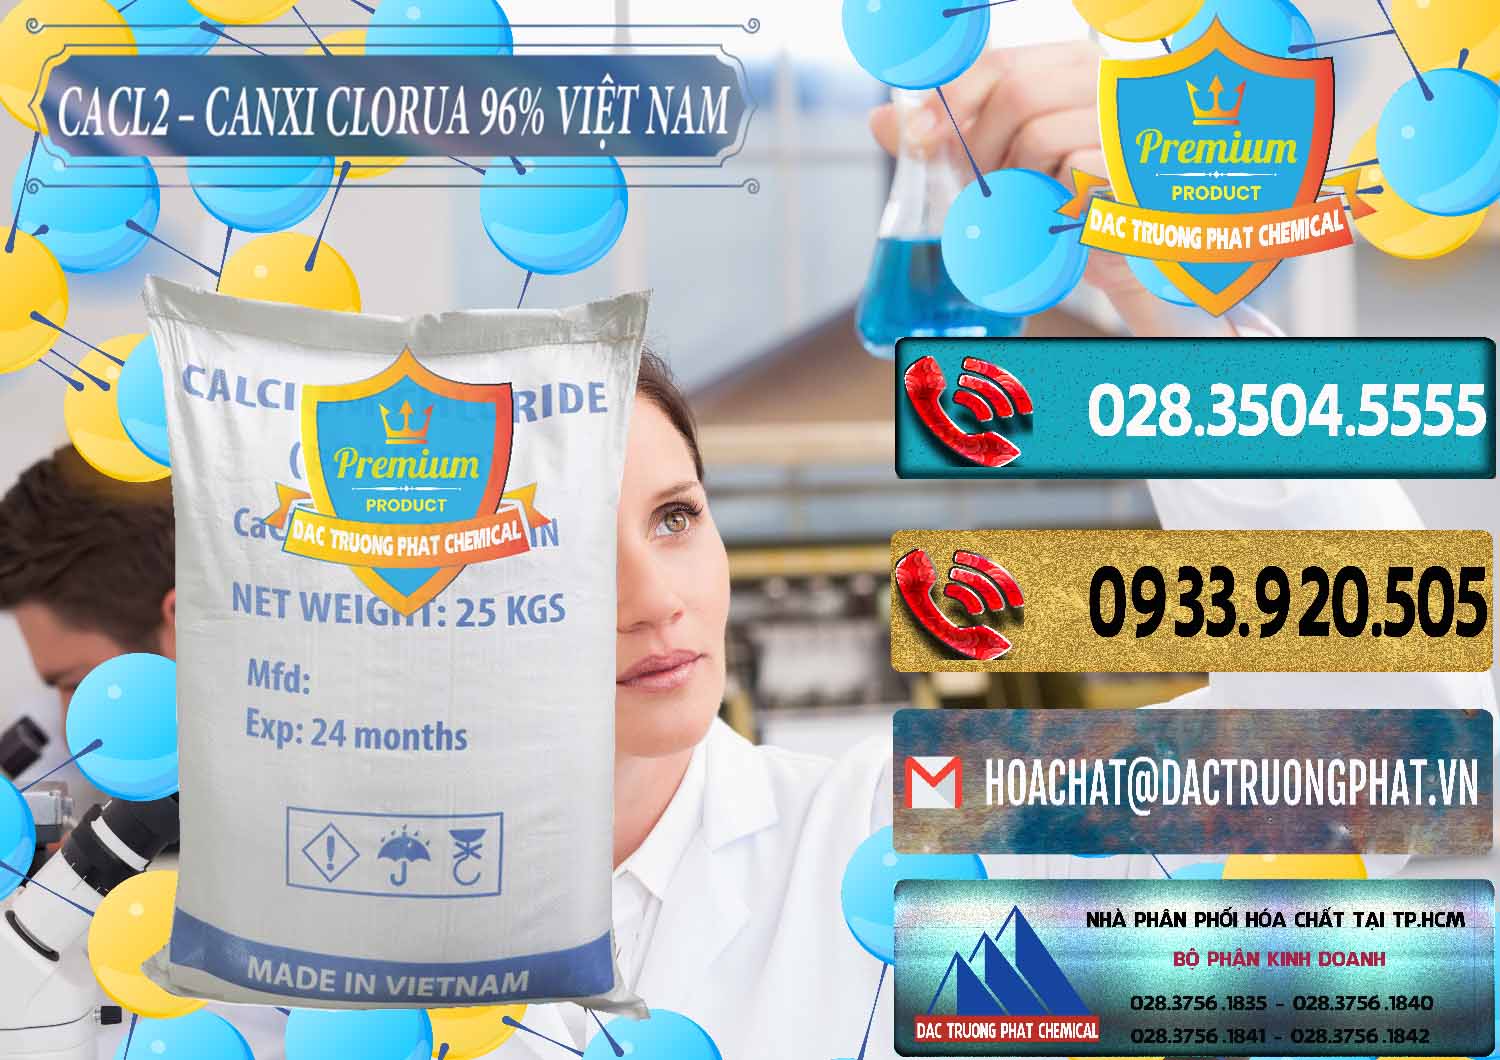 Nơi chuyên cung ứng và bán CaCl2 – Canxi Clorua 96% Việt Nam - 0236 - Cty chuyên cung cấp & bán hóa chất tại TP.HCM - hoachatdetnhuom.com